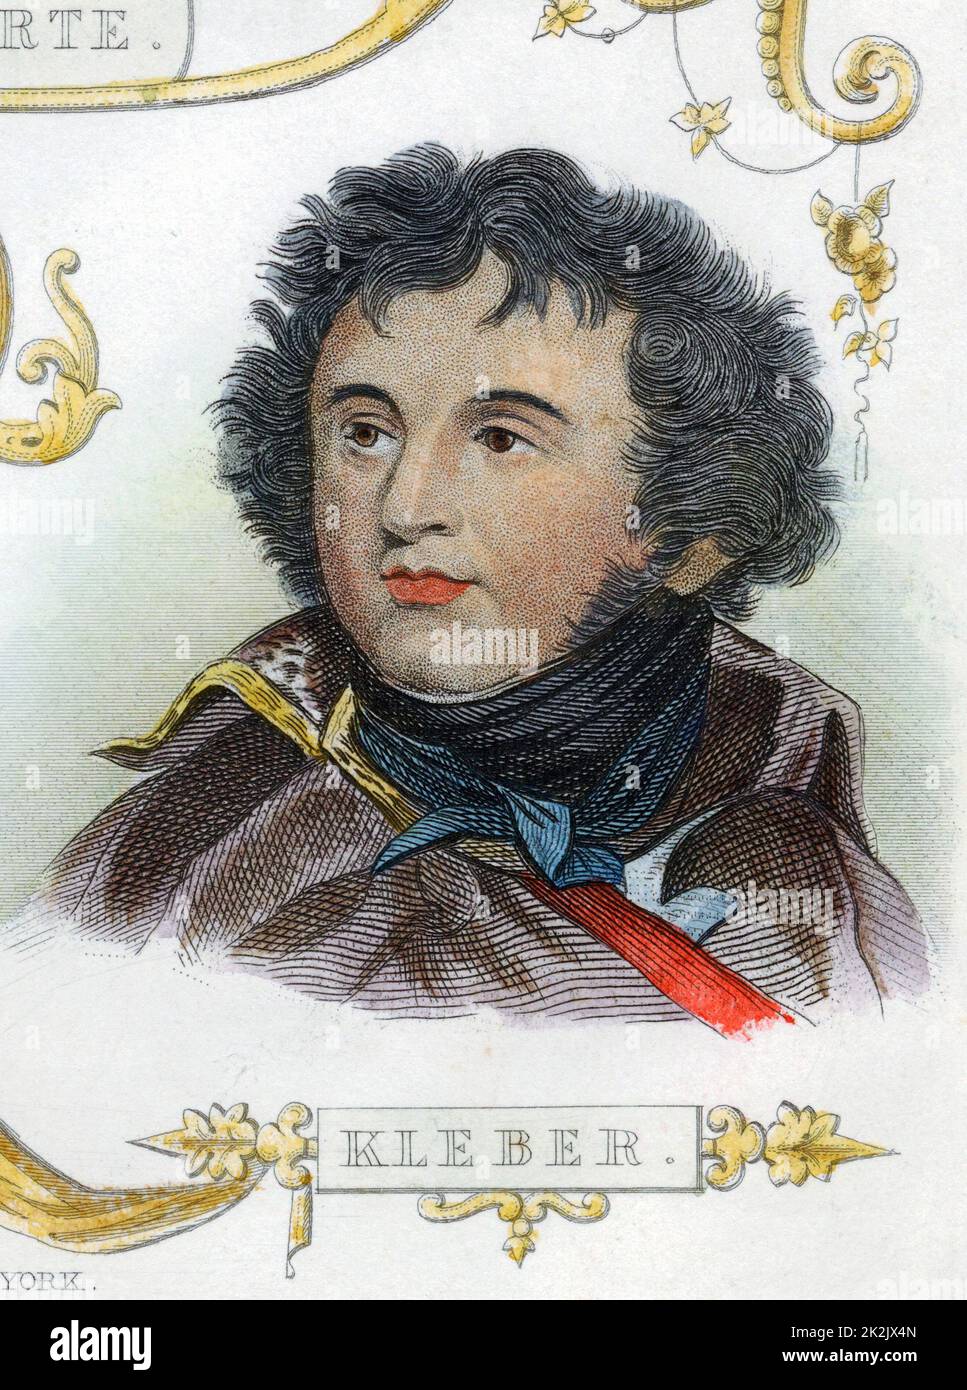 Jean Baptiste Kleber (1753-1800) soldat français. Il commanda les forces françaises en Égypte après le départ de Napoléon. Assassiné au Caire par un fanatique égyptien. Gravure de couleur main Banque D'Images